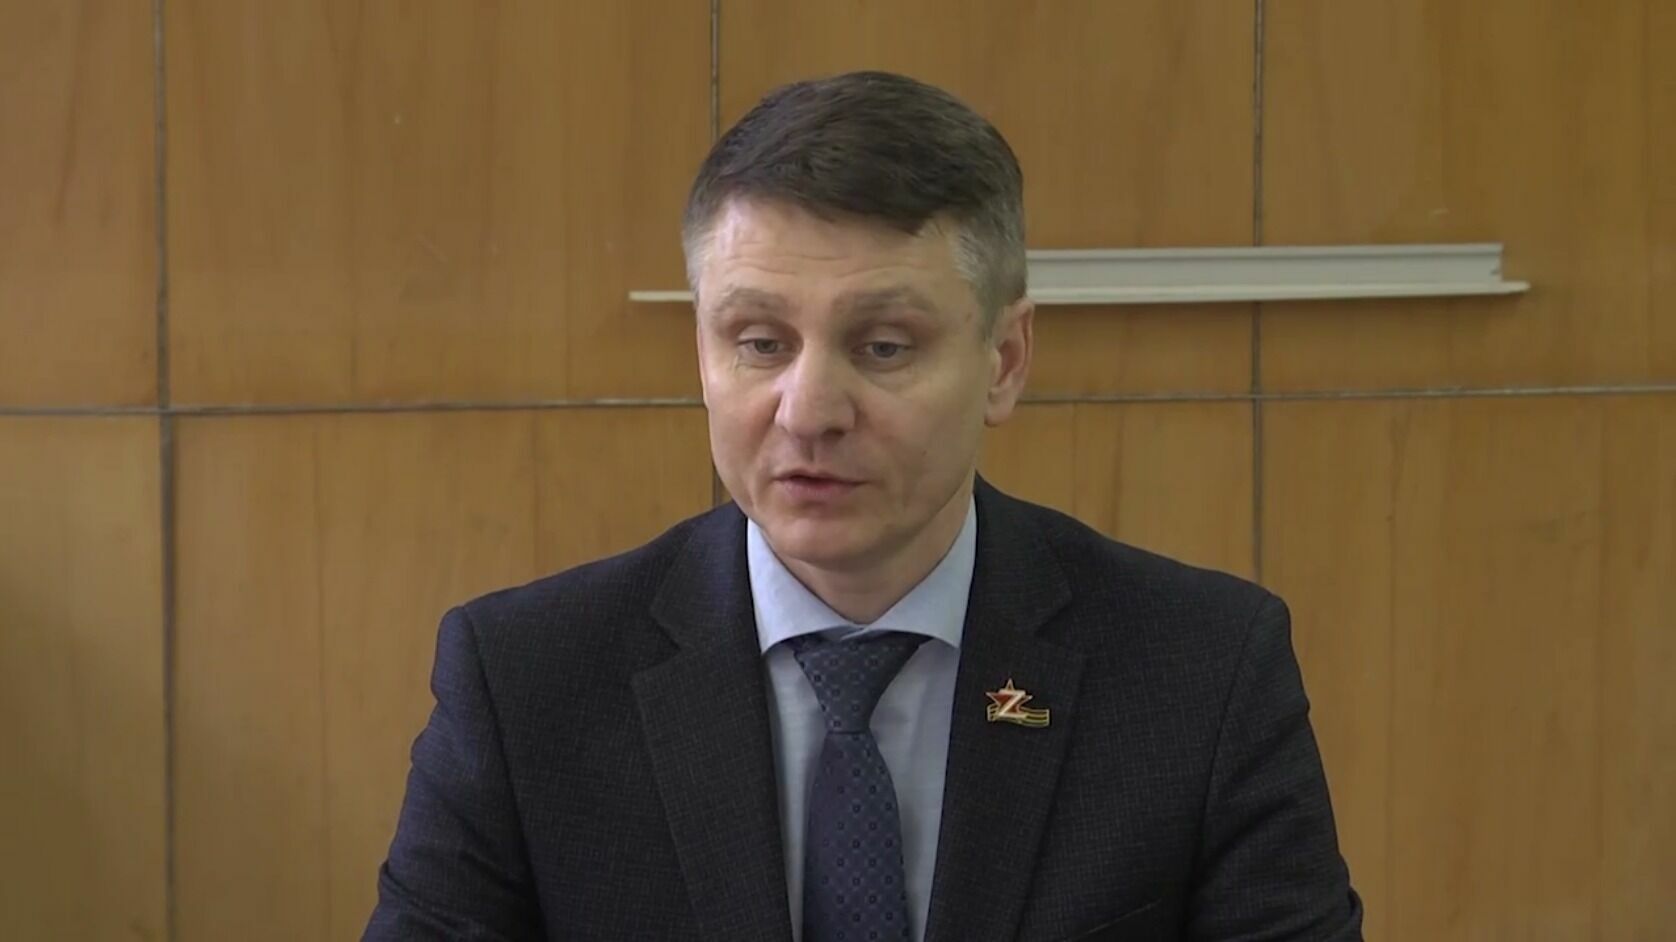 Глава администрации Шахт Андрей Ковалев внезапно подал в отставку 24 января